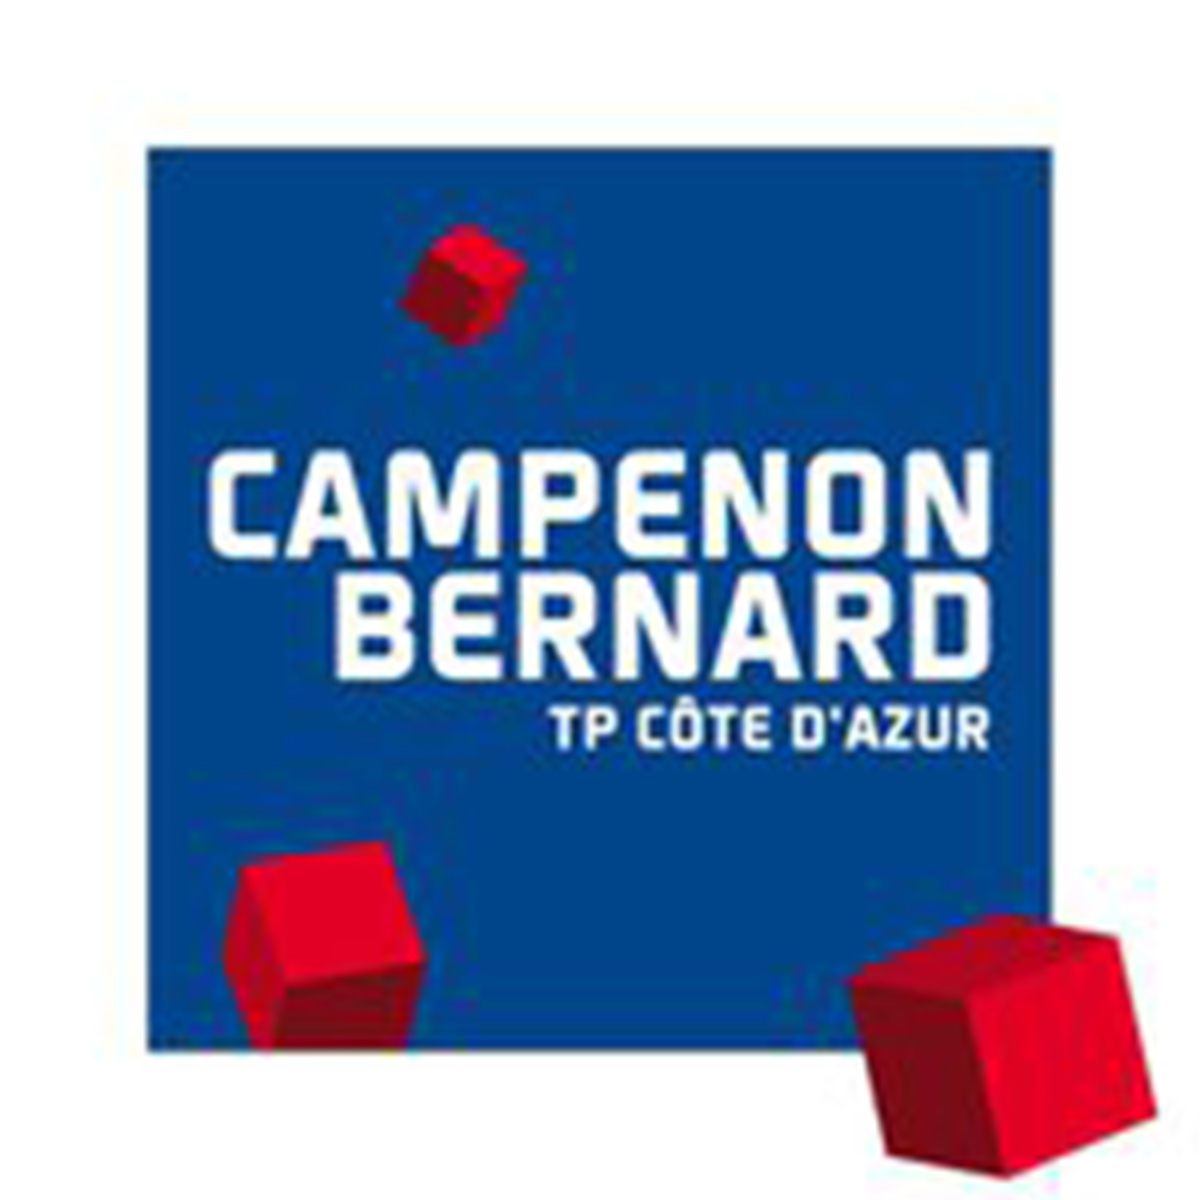 Campenon Bernard TP Côte d’Azur